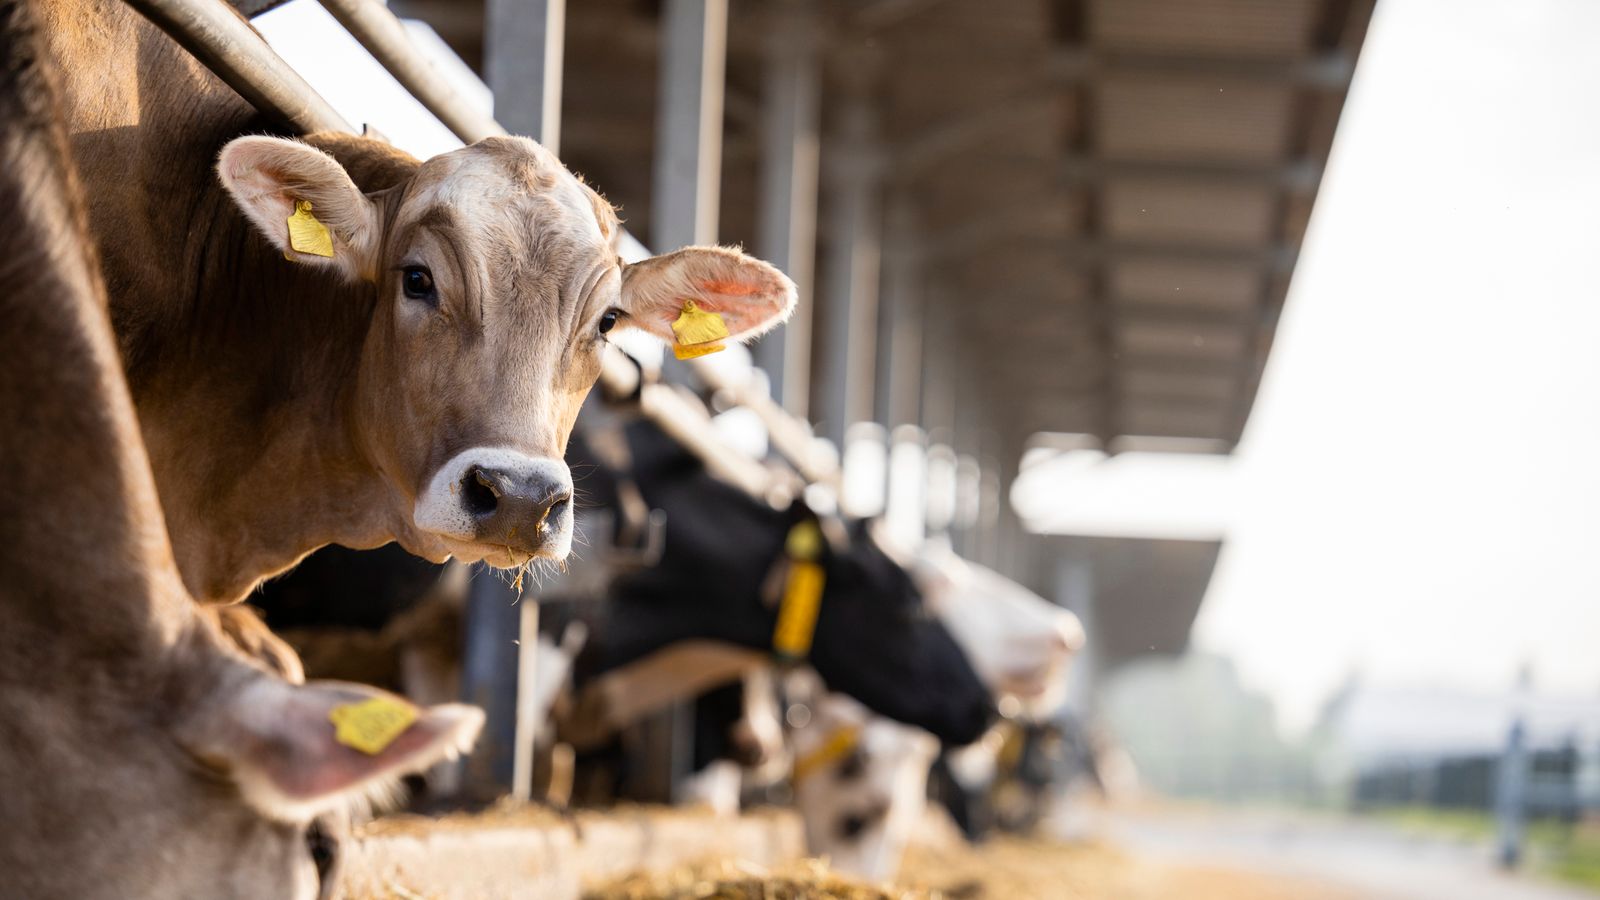 Les vaches britanniques ne sont pas testées pour la grippe aviaire malgré une épidémie aux États-Unis |  Nouvelles du Royaume-Uni